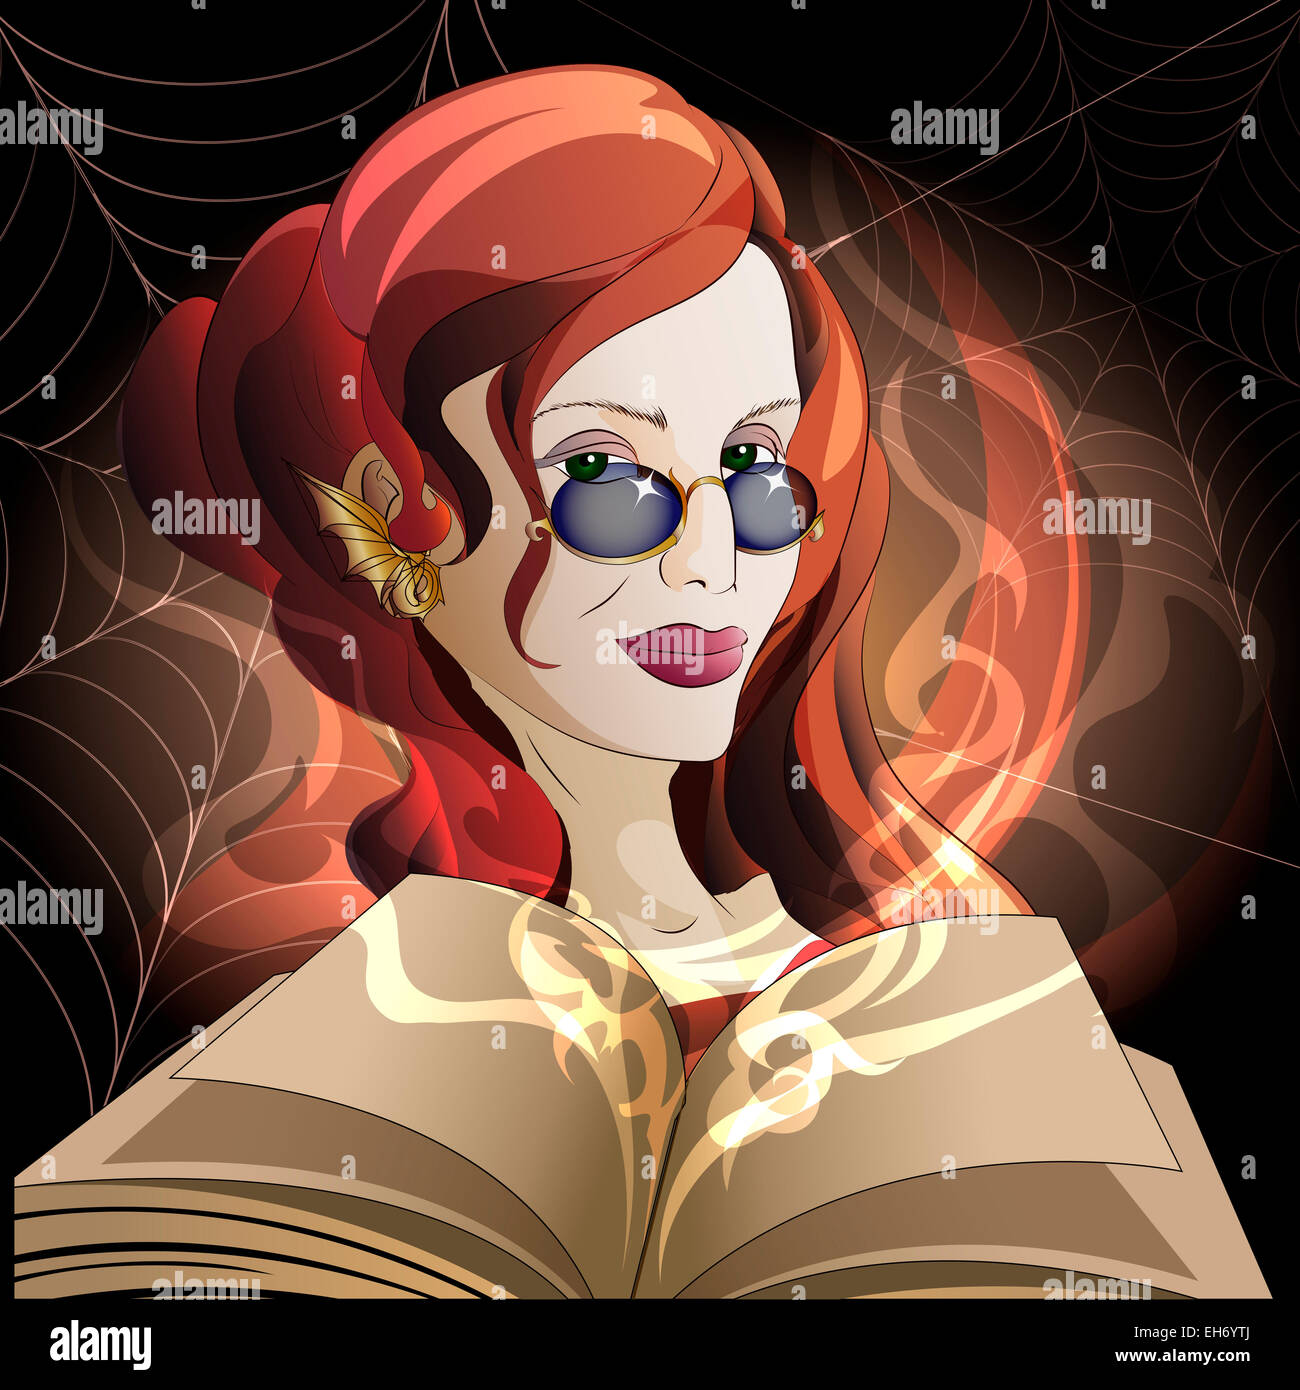 Illustration de la sorcière avec livre ouvert de sorts et attiser le feu magique contre les toiles d'araignée dessinée dans un style cartoon Banque D'Images